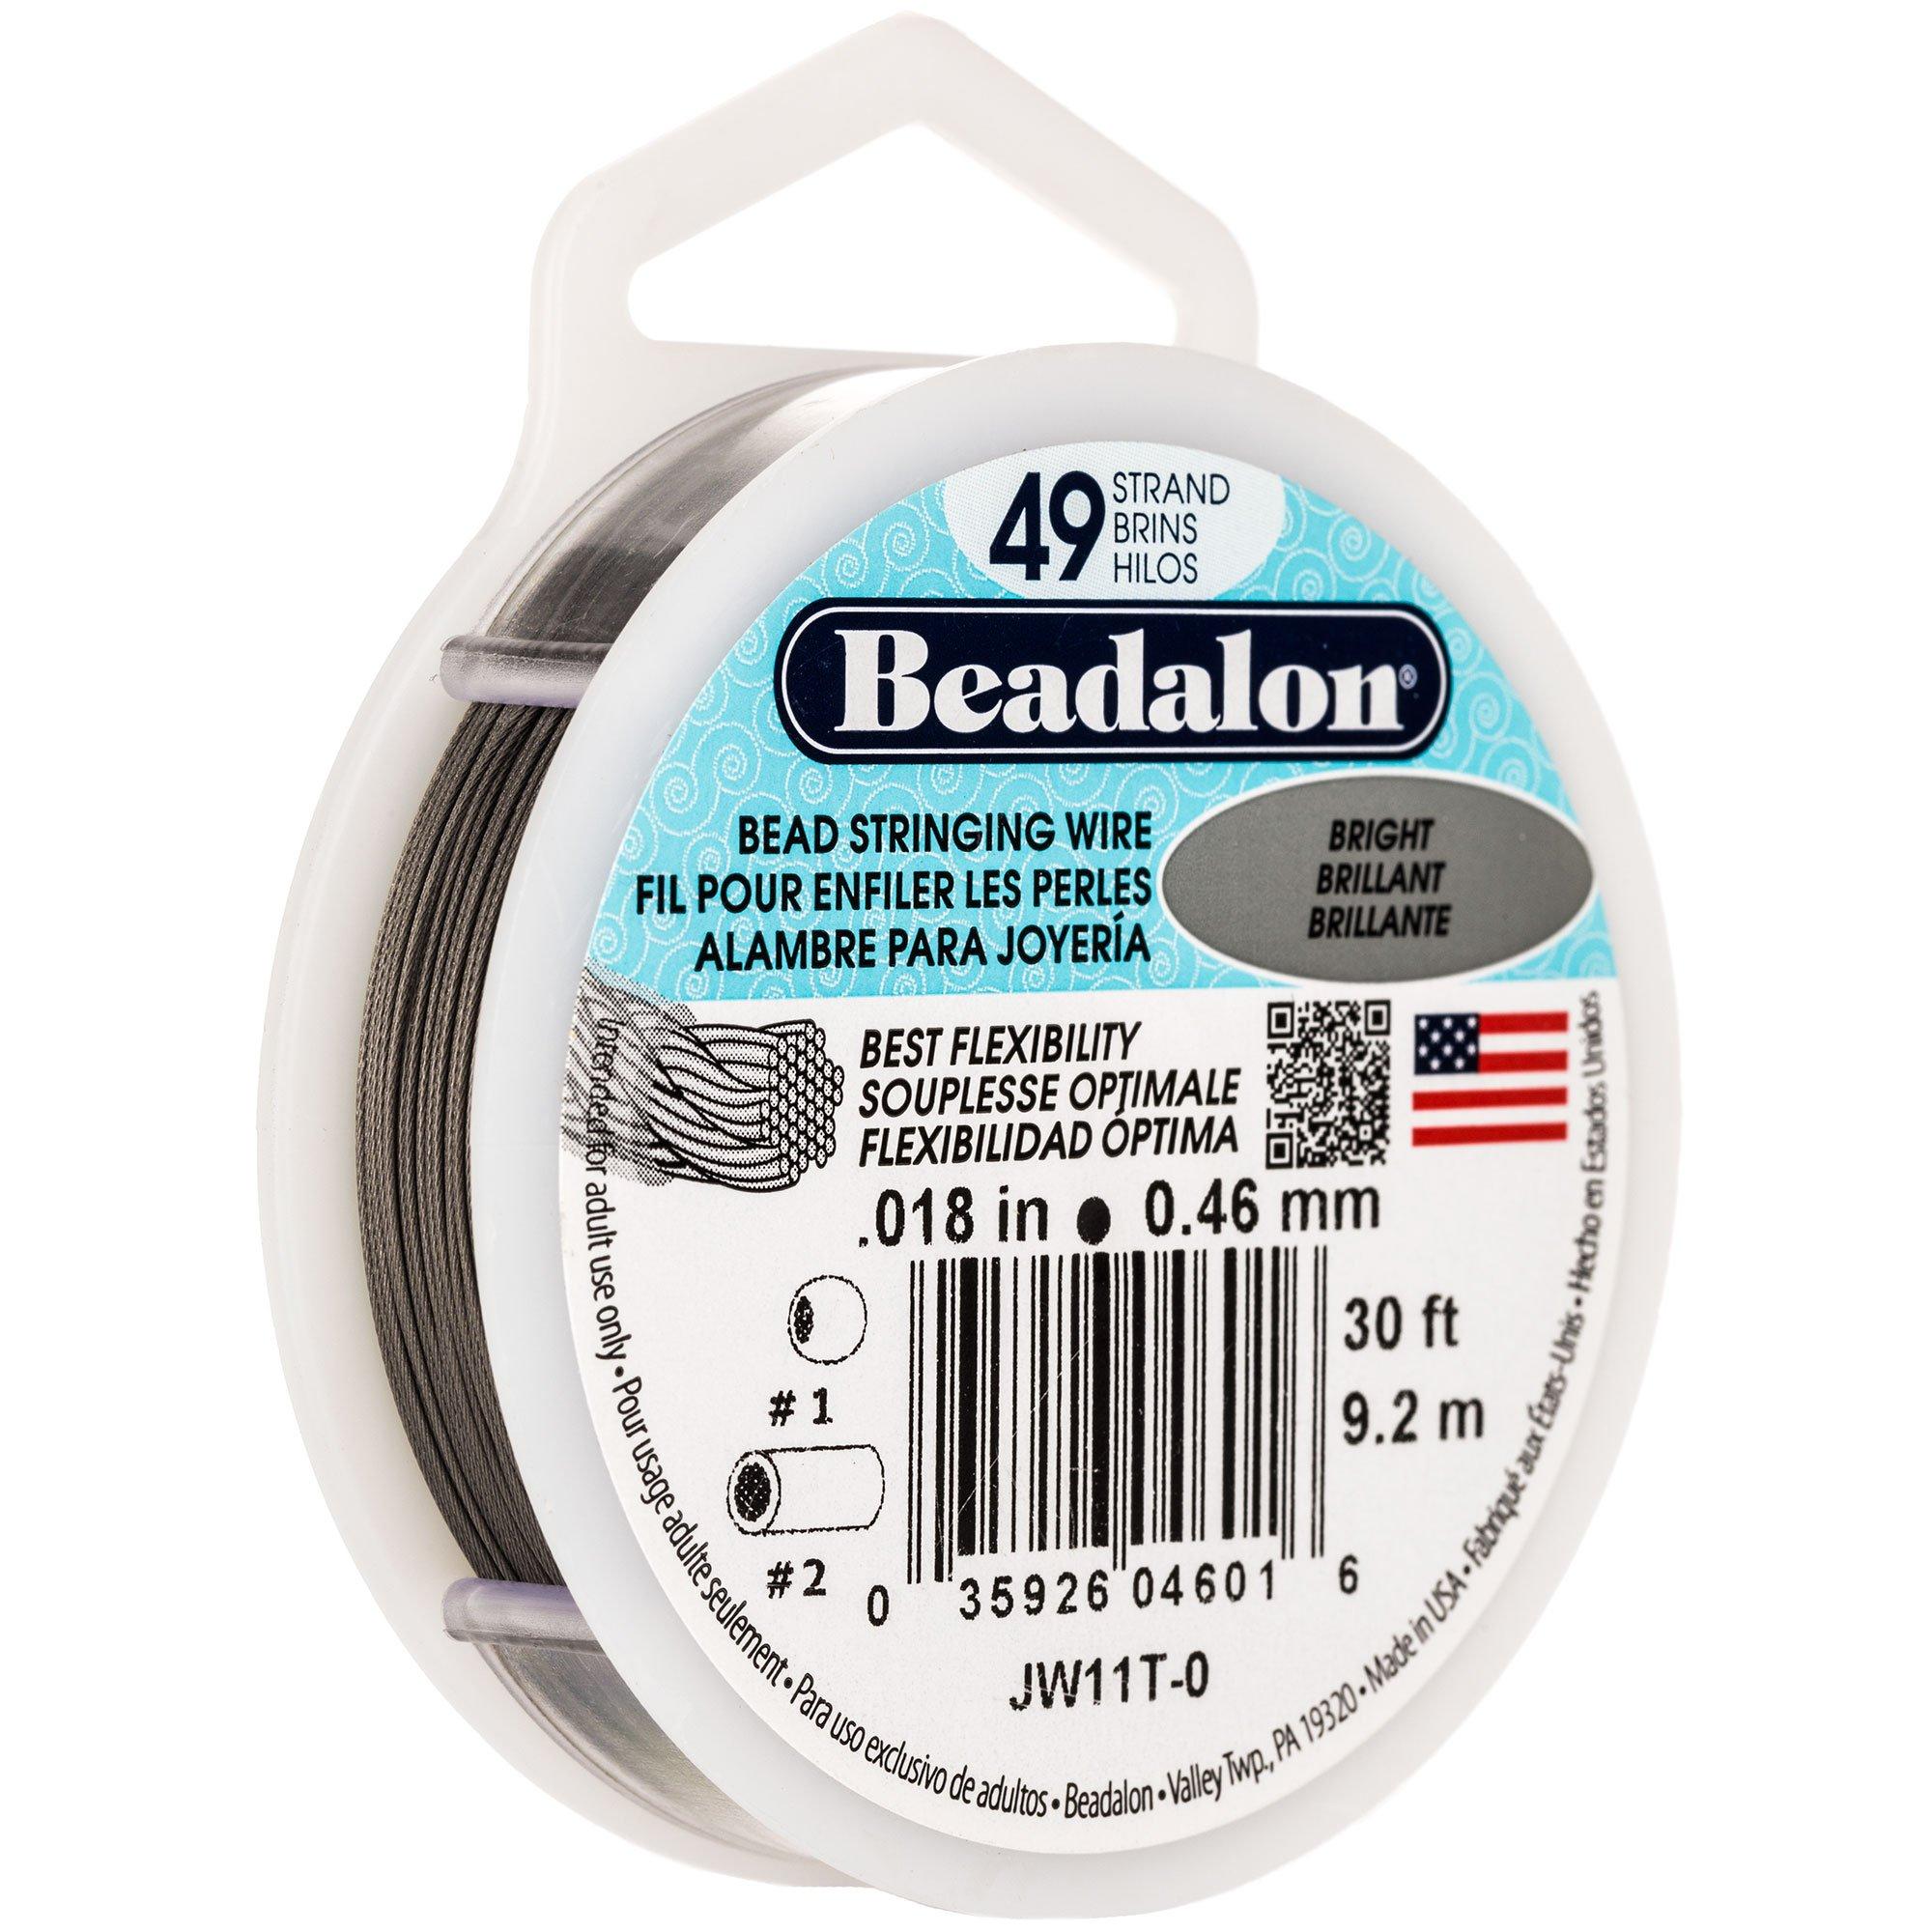 61-733-49-87 Beadalon Beading Wire, 49 Strand, 0.024, 30' Spool